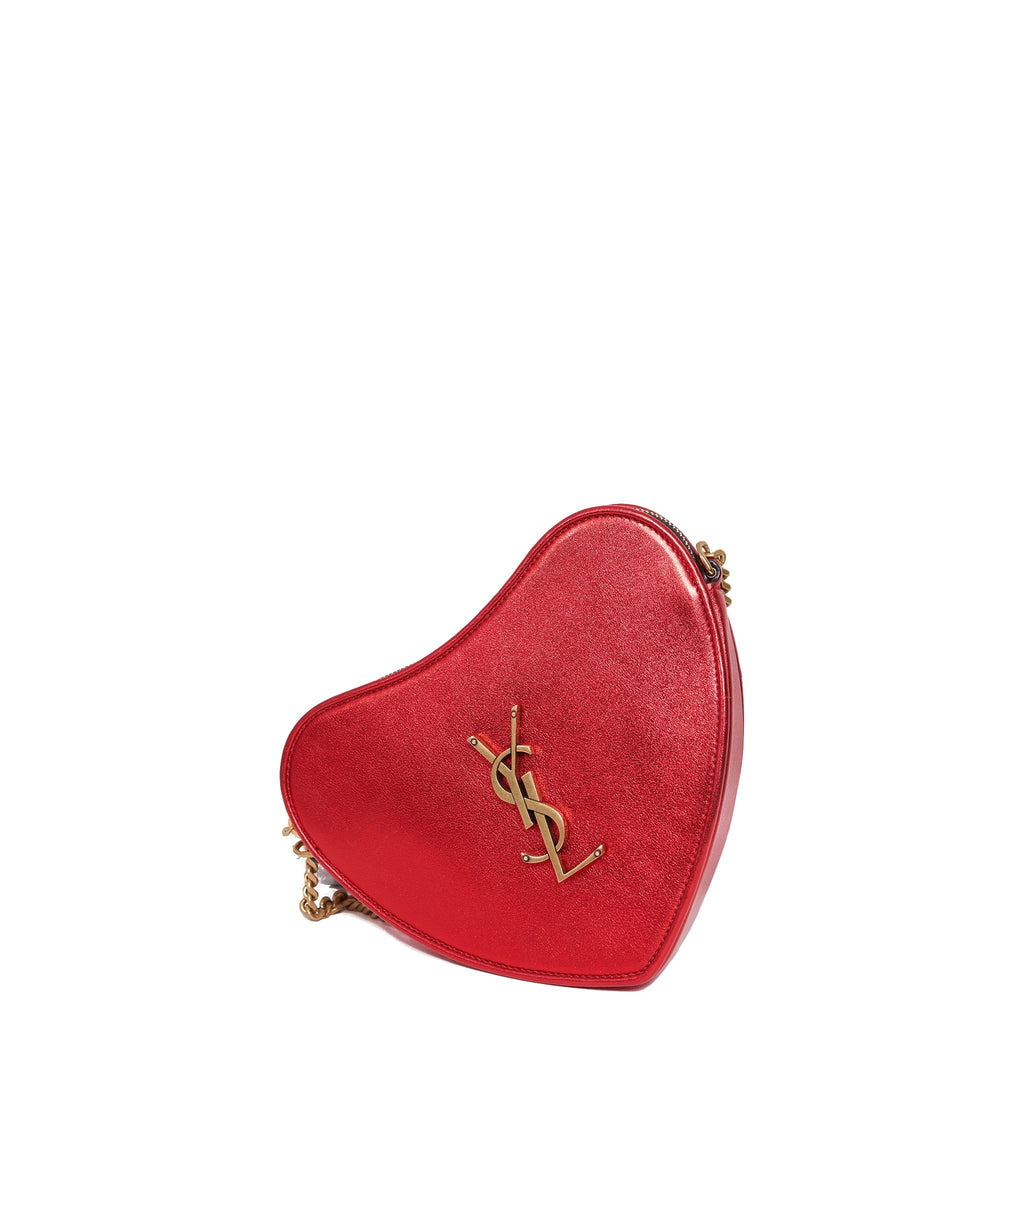 YSL purse on a chain- Red | Ysl purse, Ysl bag, Bags